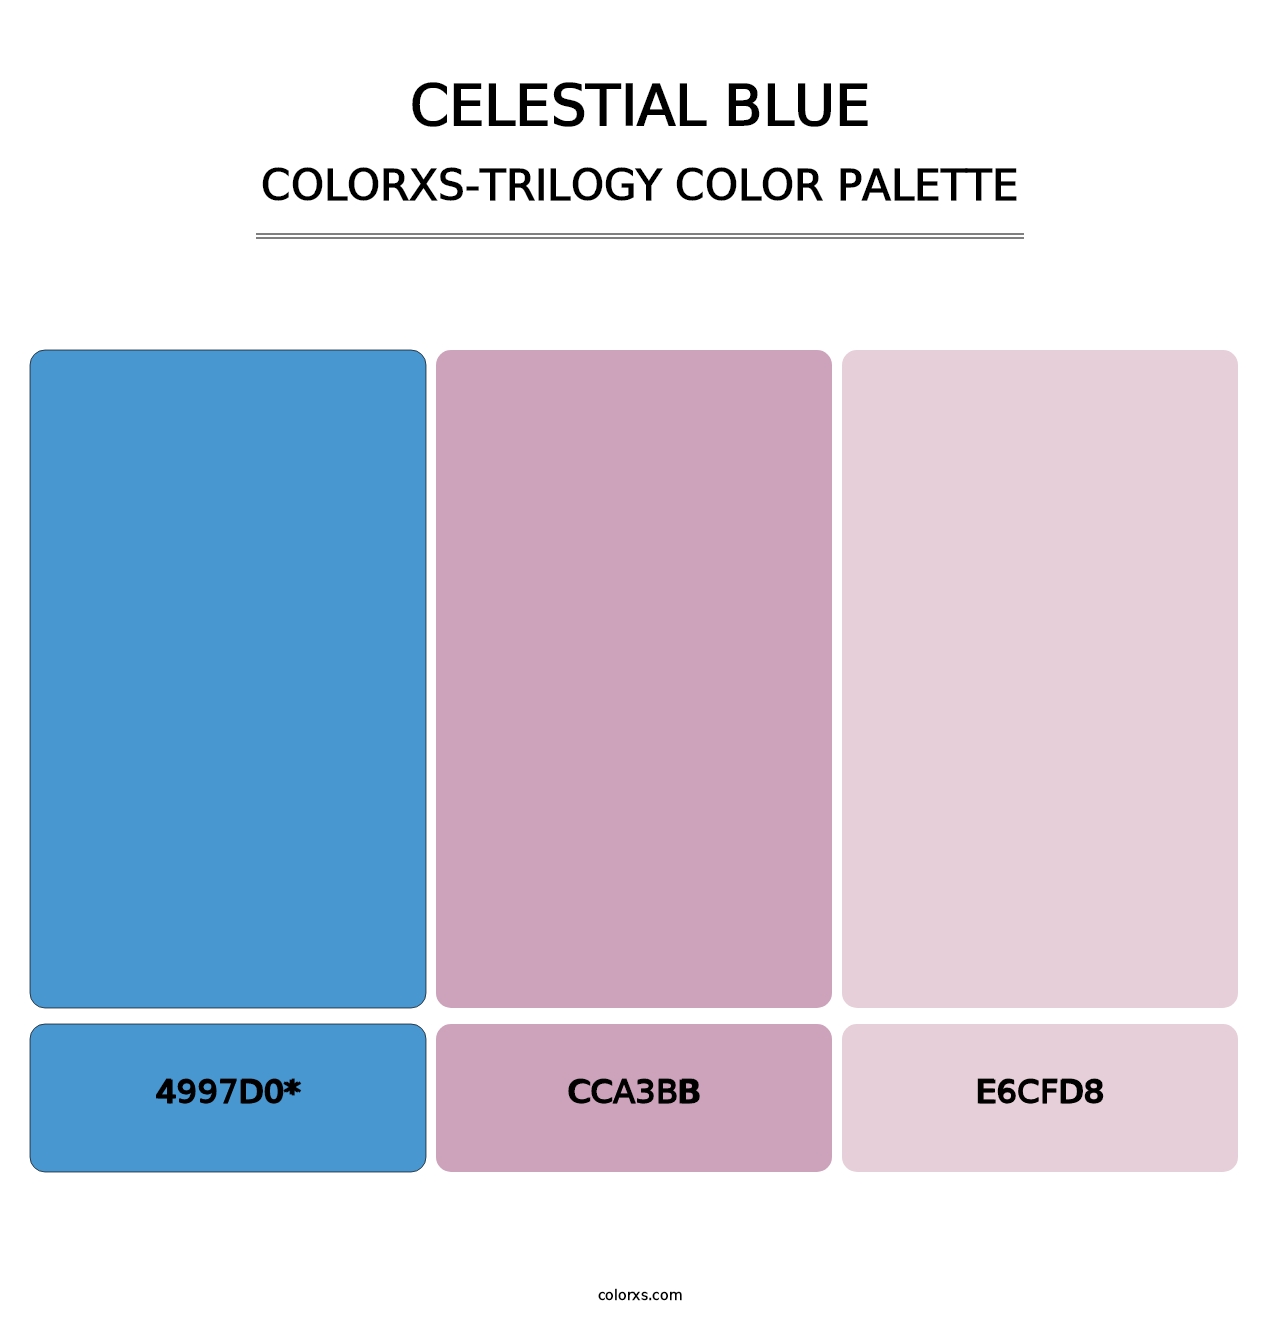 Celestial Blue - Colorxs Trilogy Palette